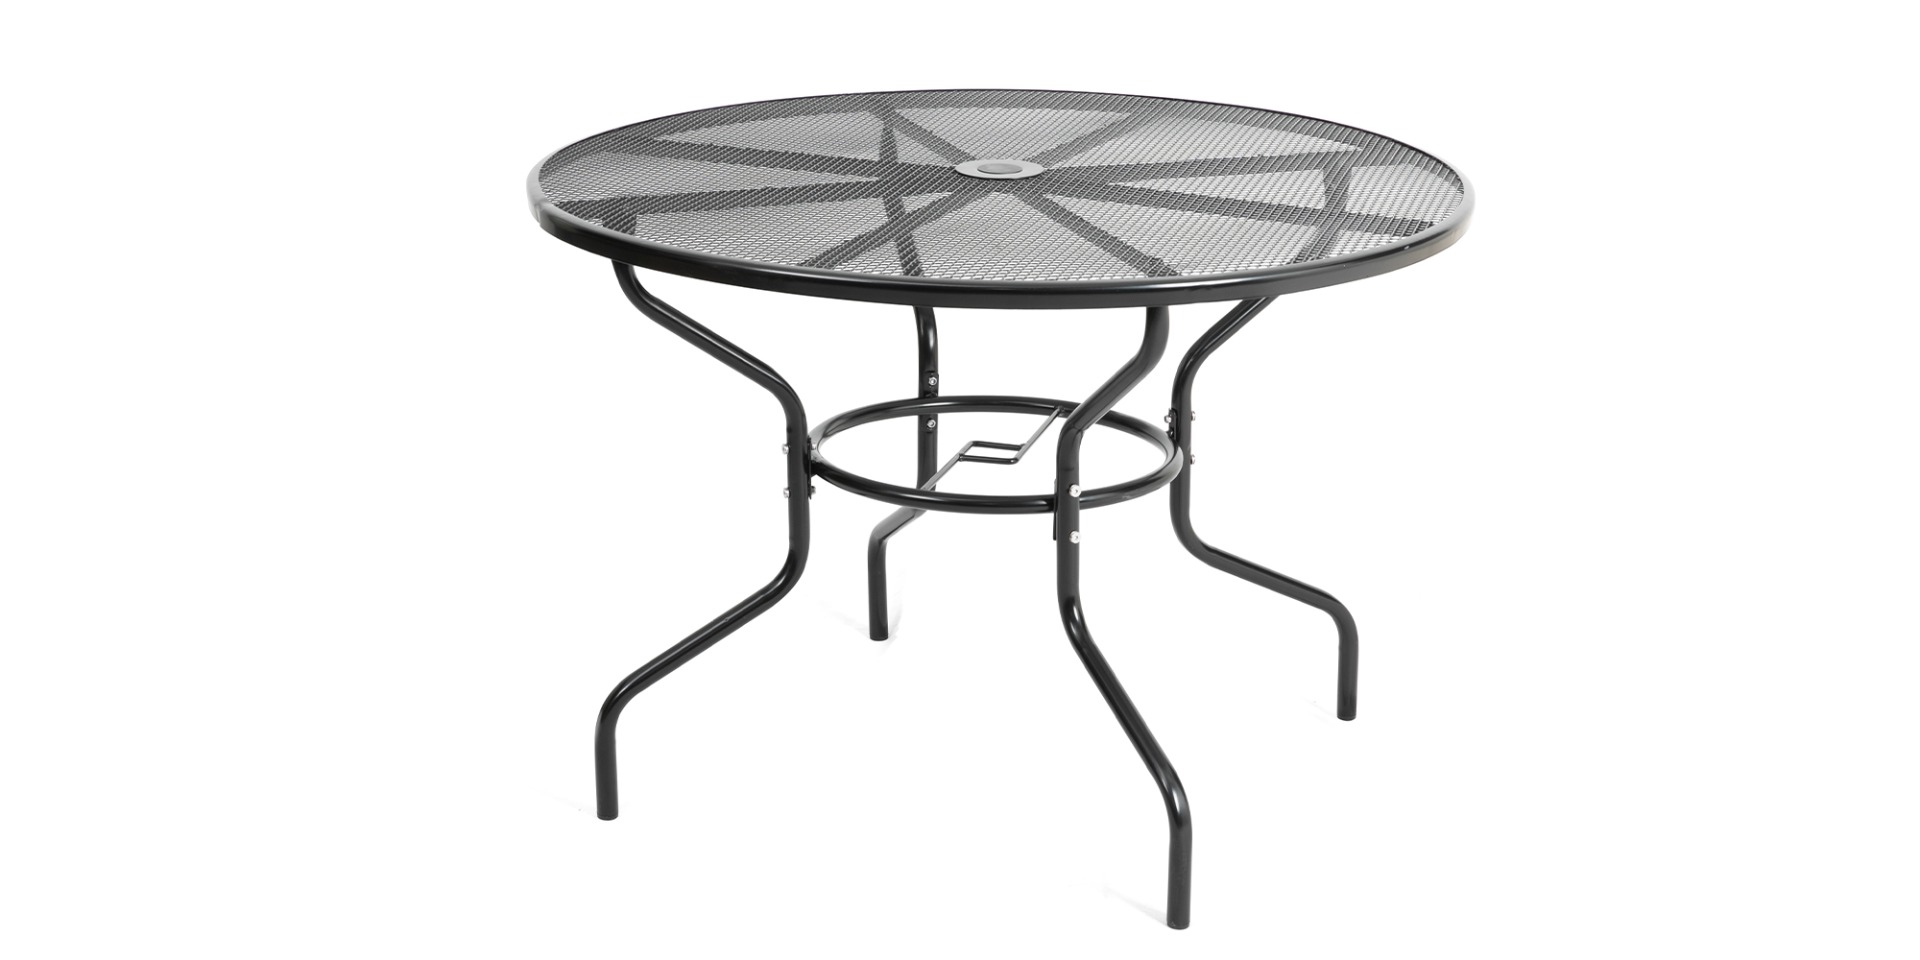 ZAZU okrúhly záhradný kovový stôl, čierny